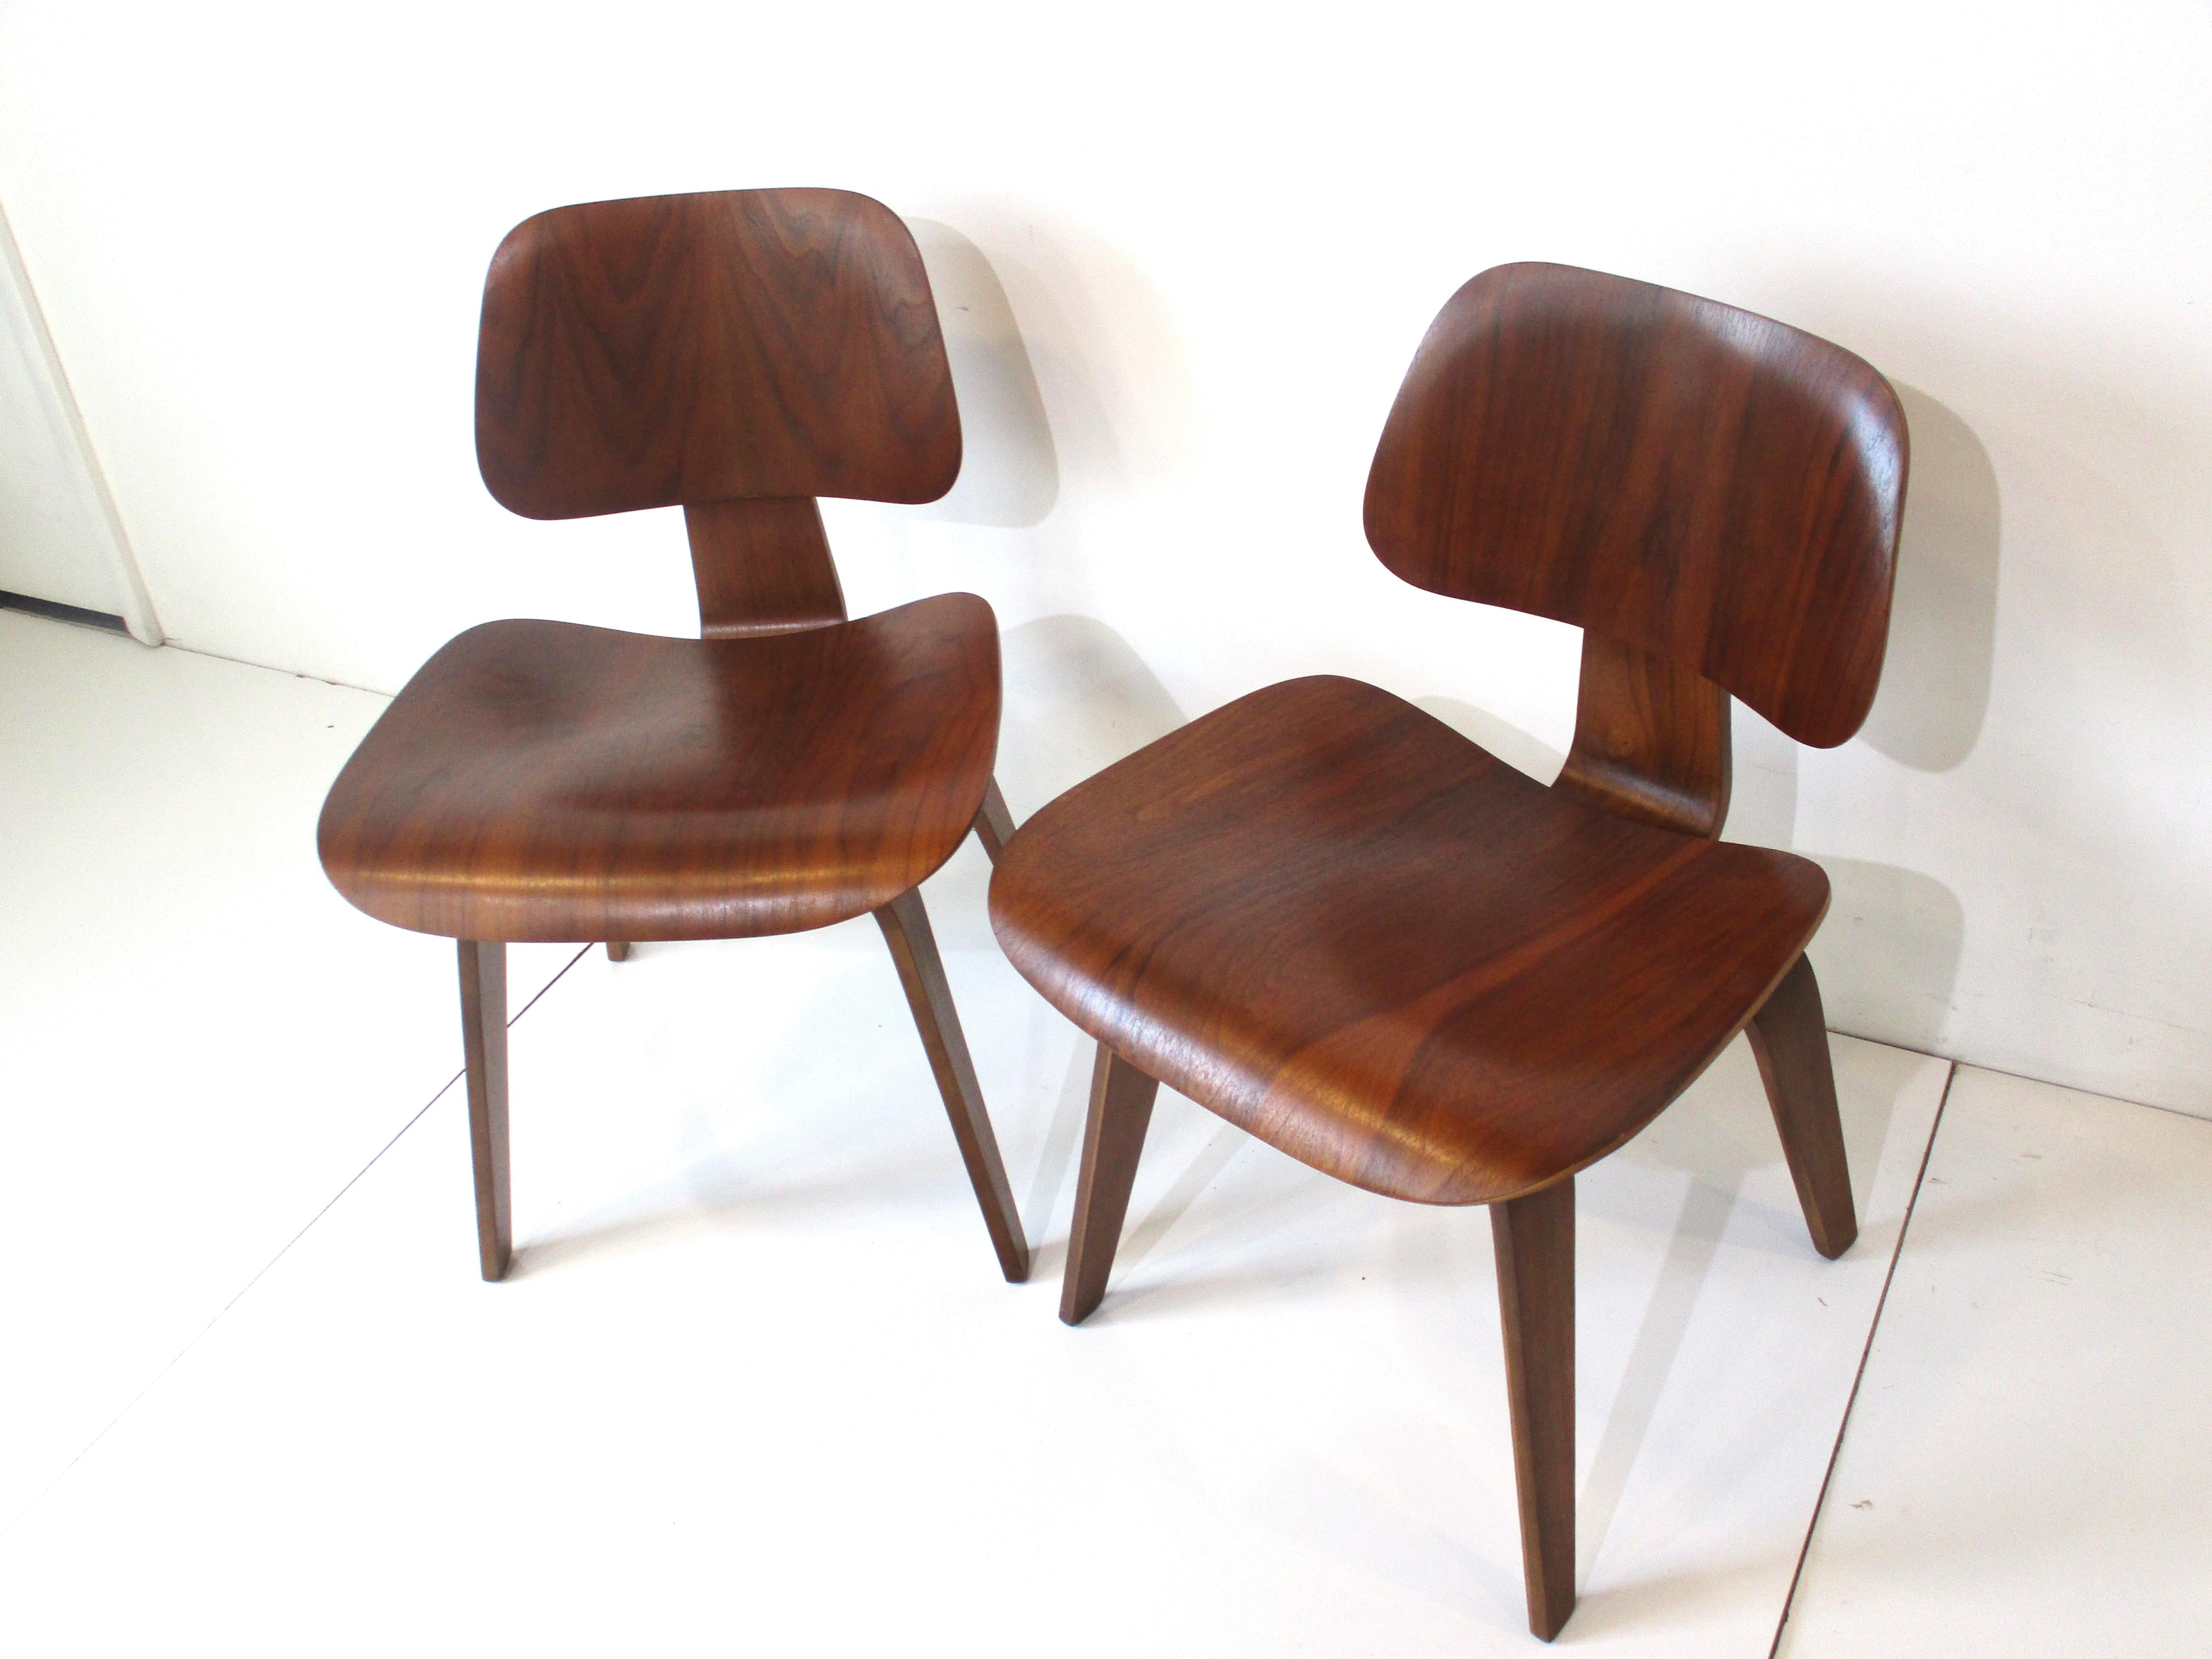 Une paire de chaises d'appoint en contreplaqué de noyer courbé très bien grainé au début, conçues par l'équipe emblématique de Ray et Charles Eames . Ces chaises sculpturales font partie de l'histoire de l'ameublement qui a débuté après la Seconde